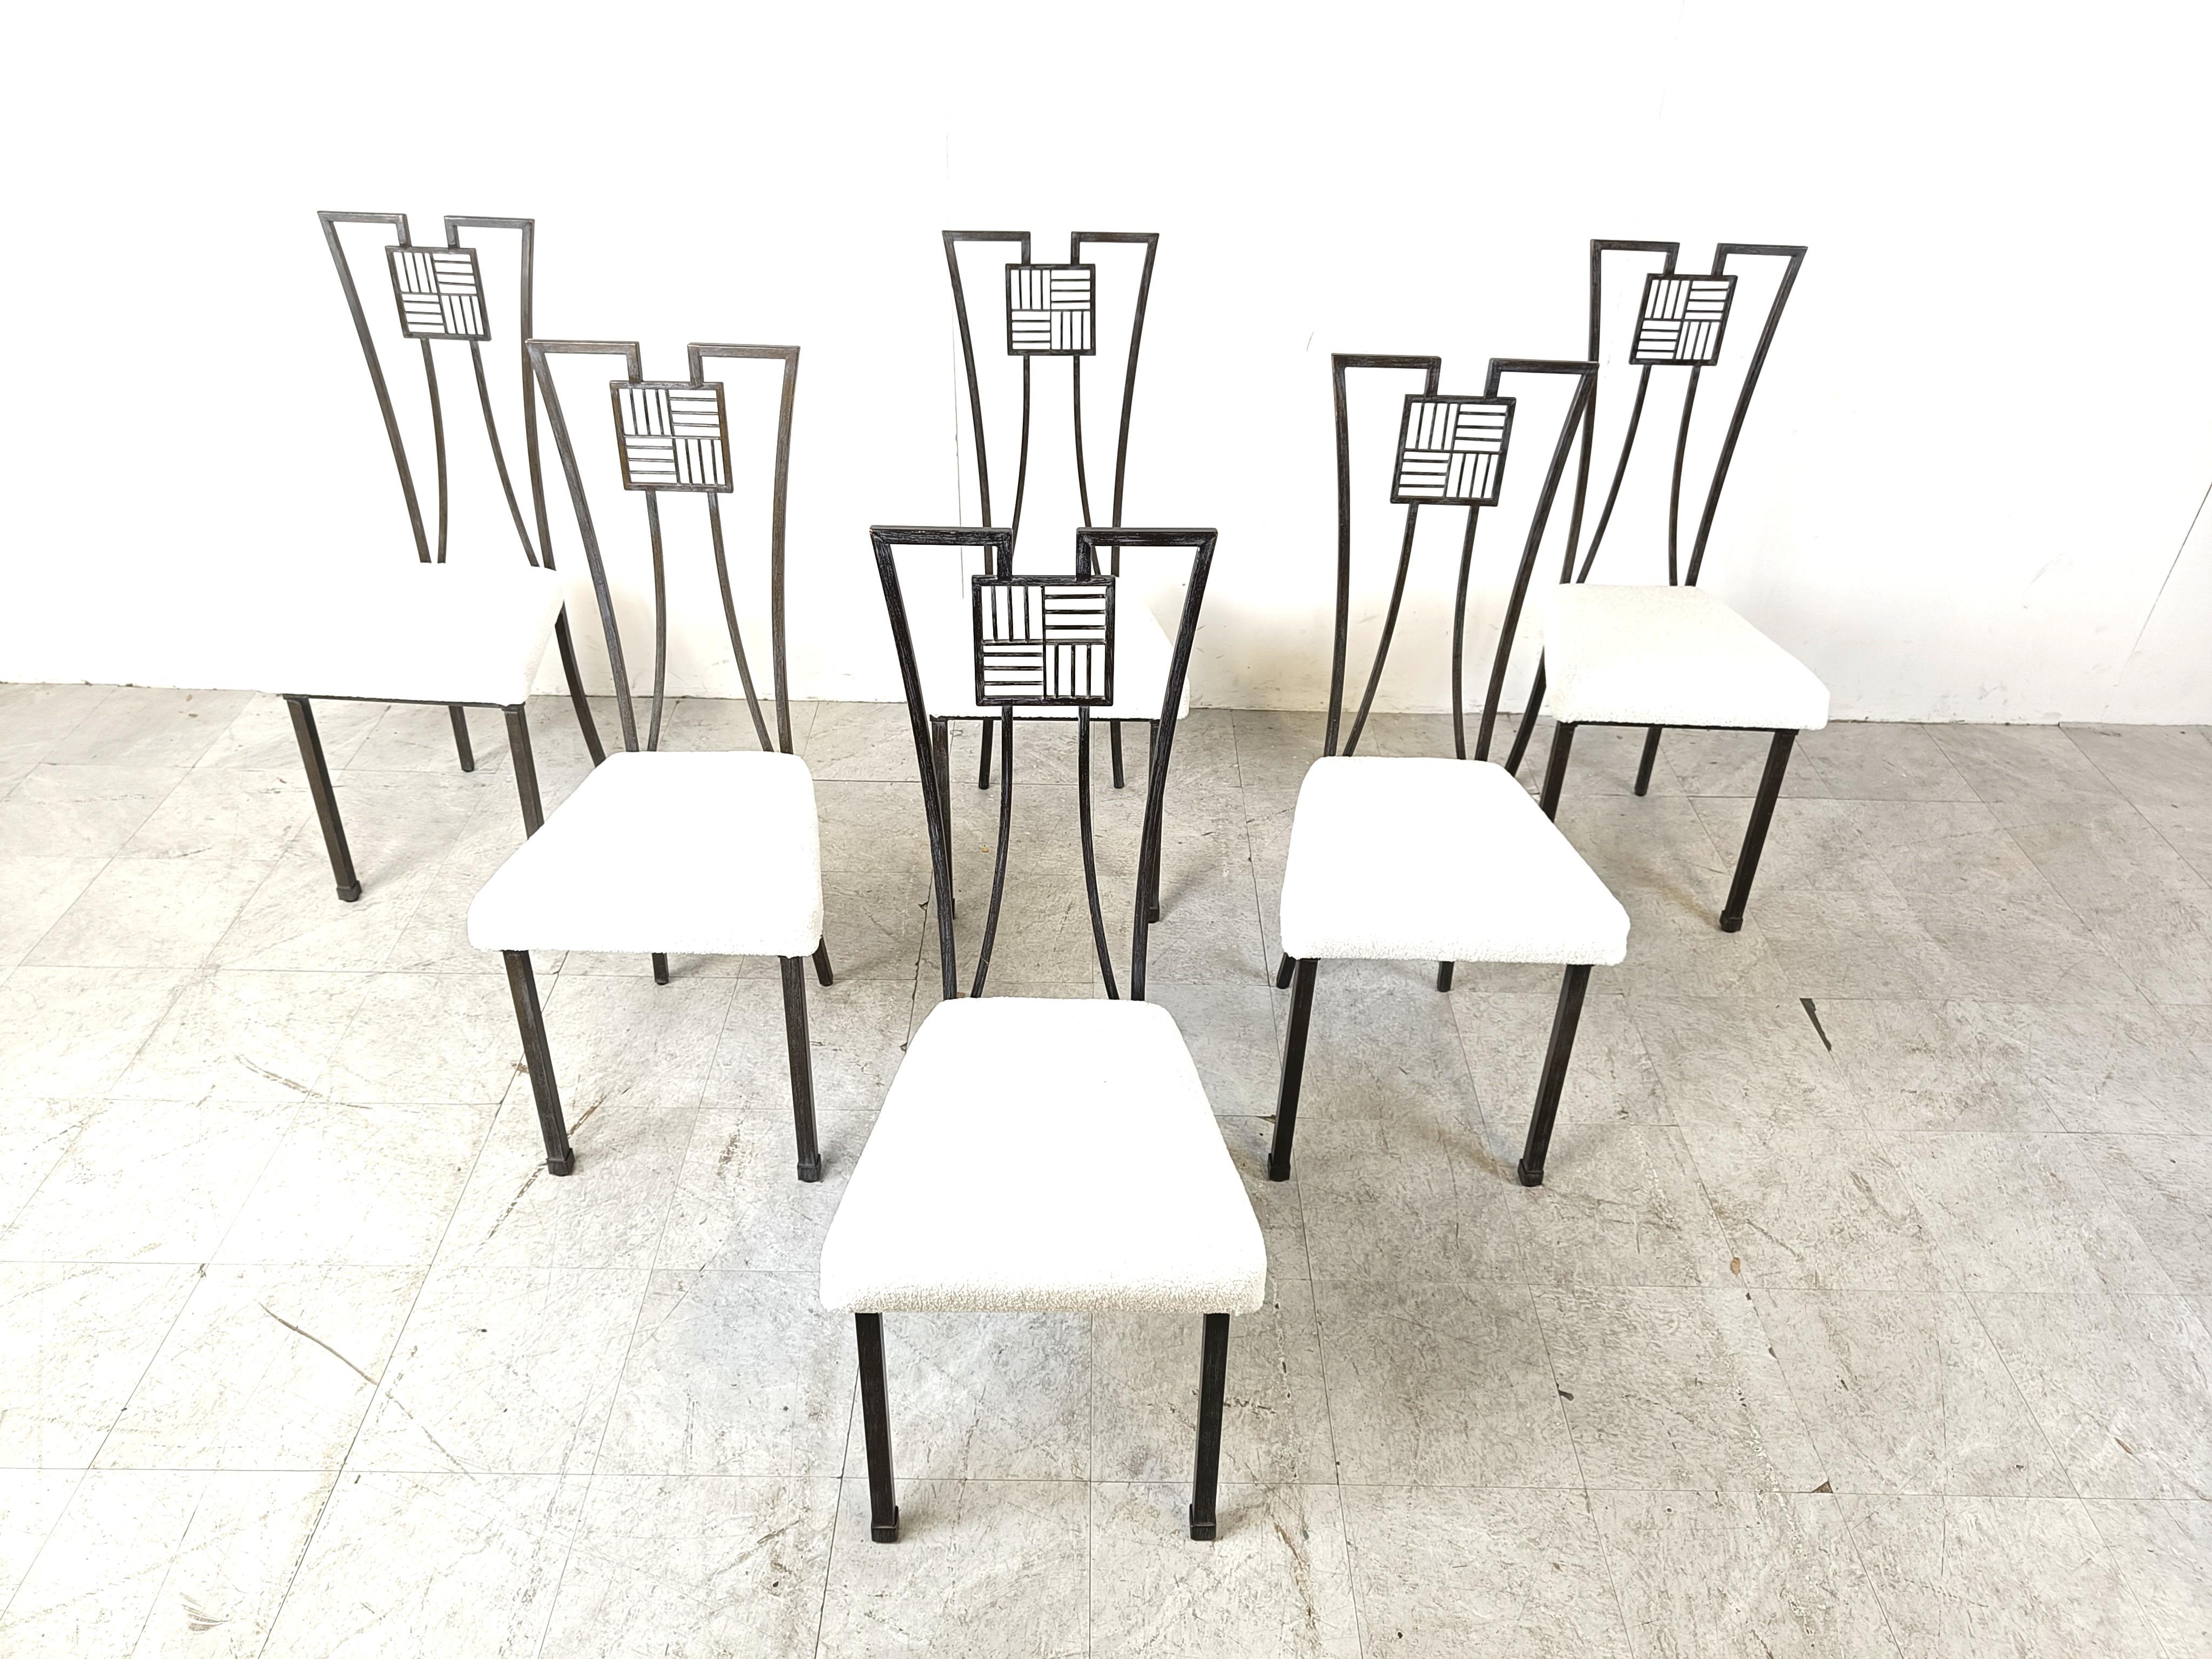 Graue Vintage-Stühle aus Metall mit hoher Rückenlehne im japanischen Stil.

Schöner gebogener Metallrahmen mit einer Rückenlehne, die zu den Hinterbeinen wird.

Neu gepolstert mit einem frischen weißen Bouclé-Stoff.

1980er Jahre -